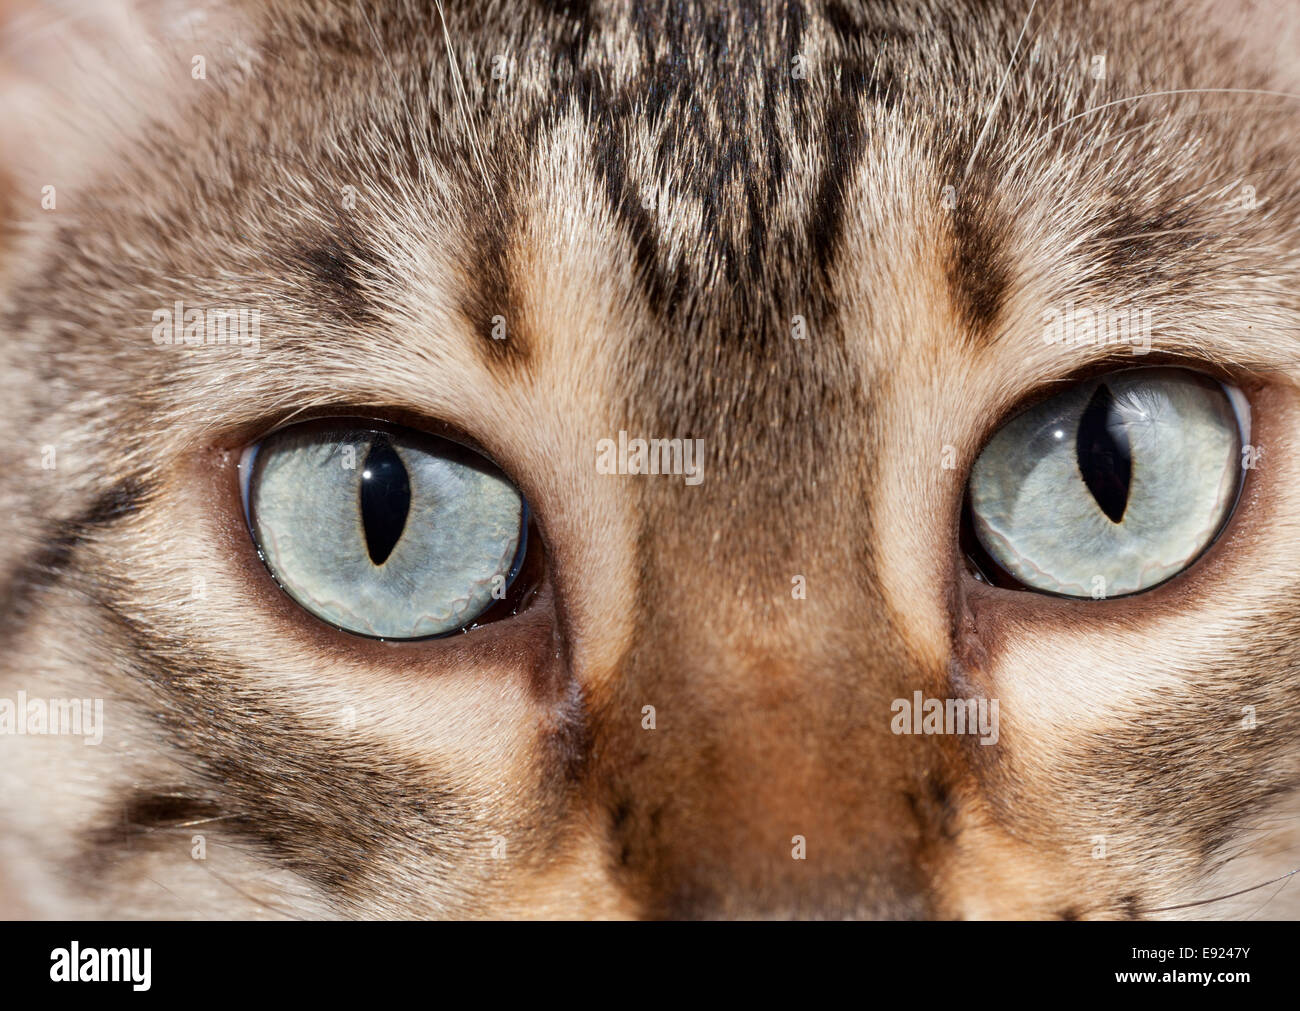 Bengal kitten eyes in macro close up Stock Photo